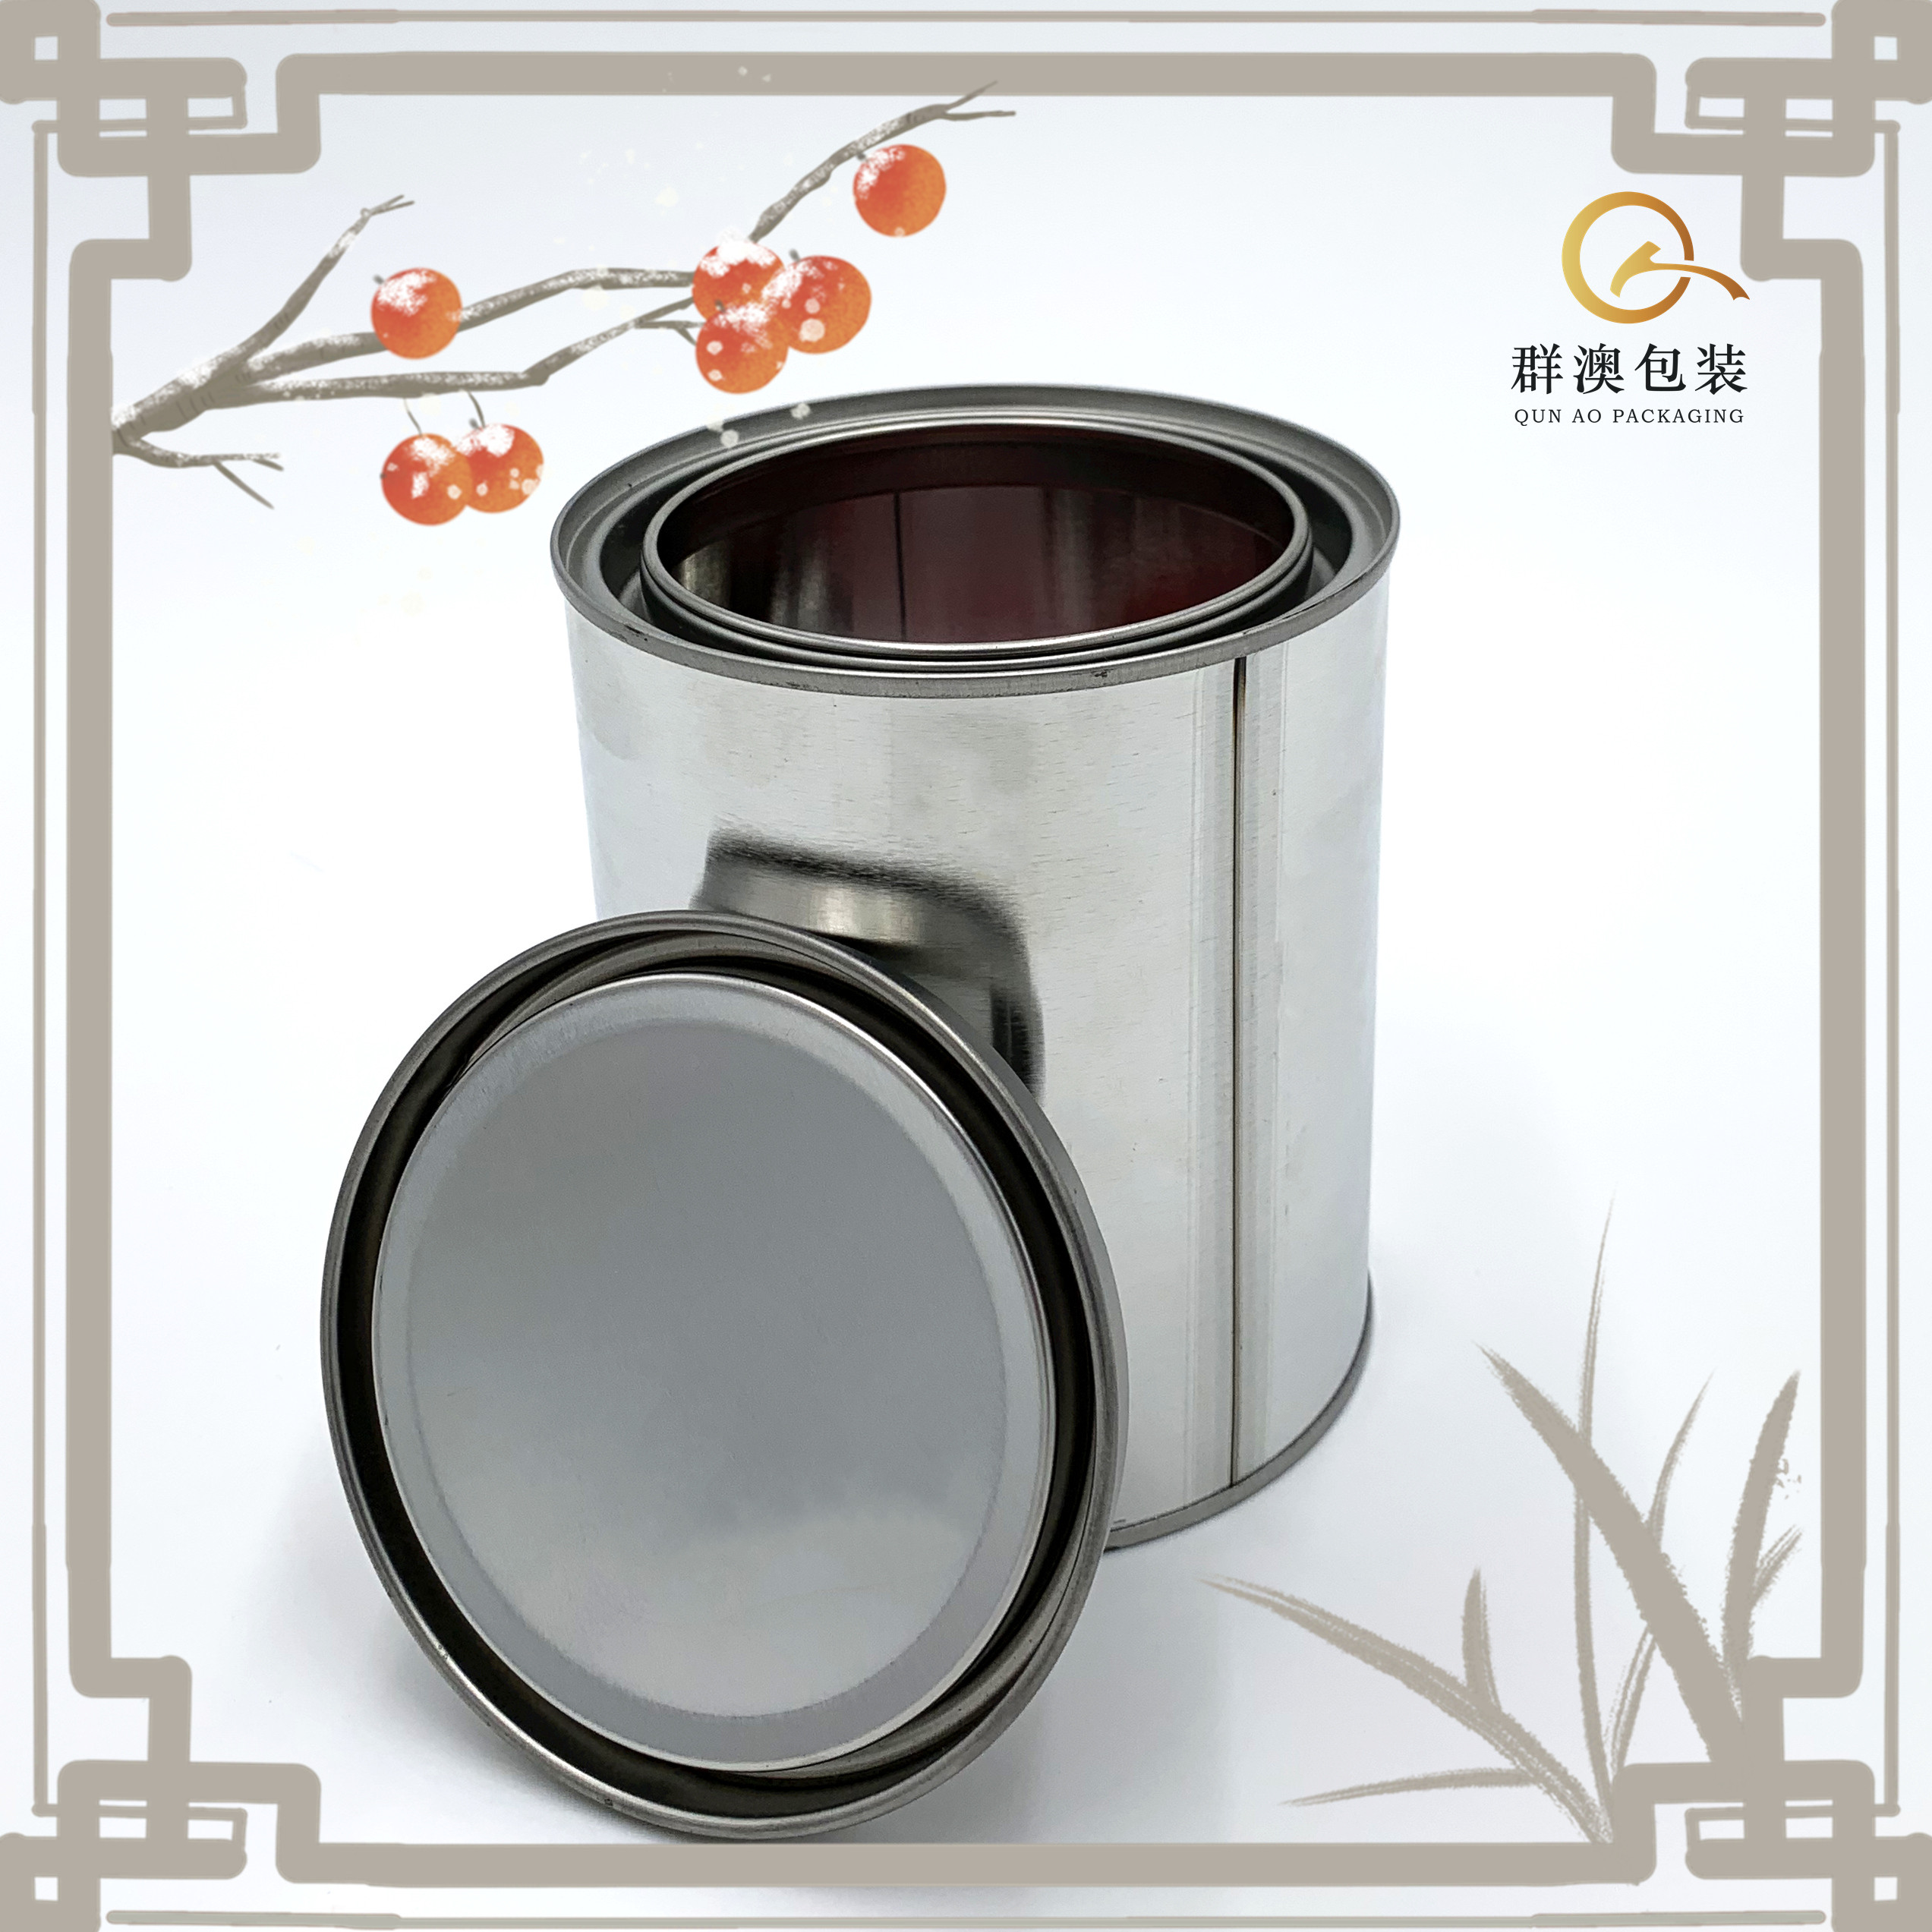 厂家直销 1L圆罐 1kg样品罐 铁罐 金属罐 油漆桶 化工罐